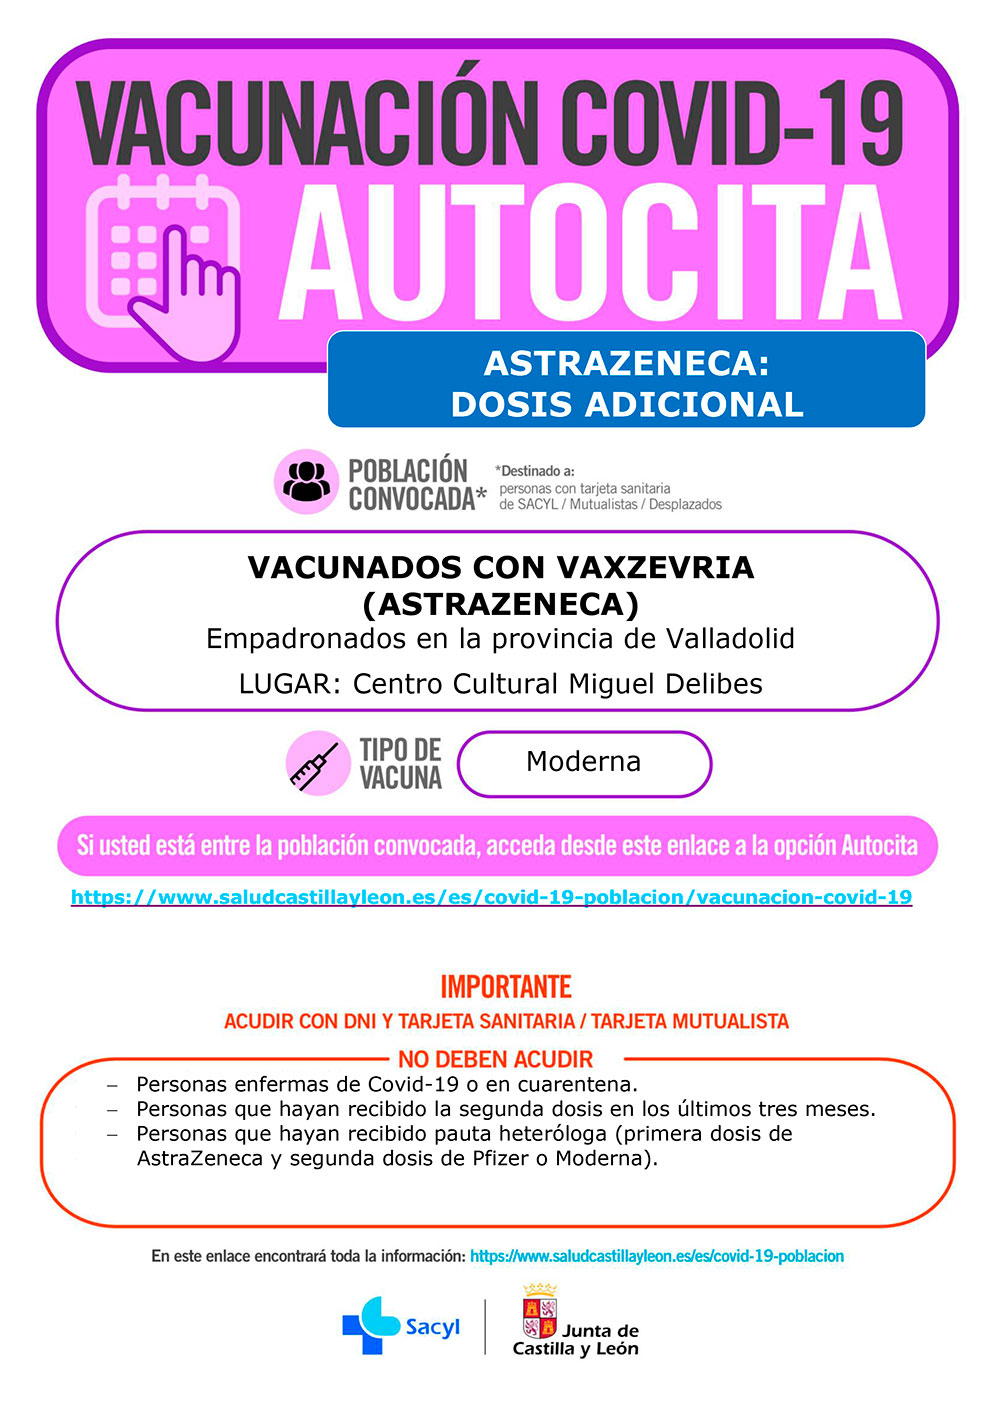 Covid-19. Autocita vacunados con Astrazeneca